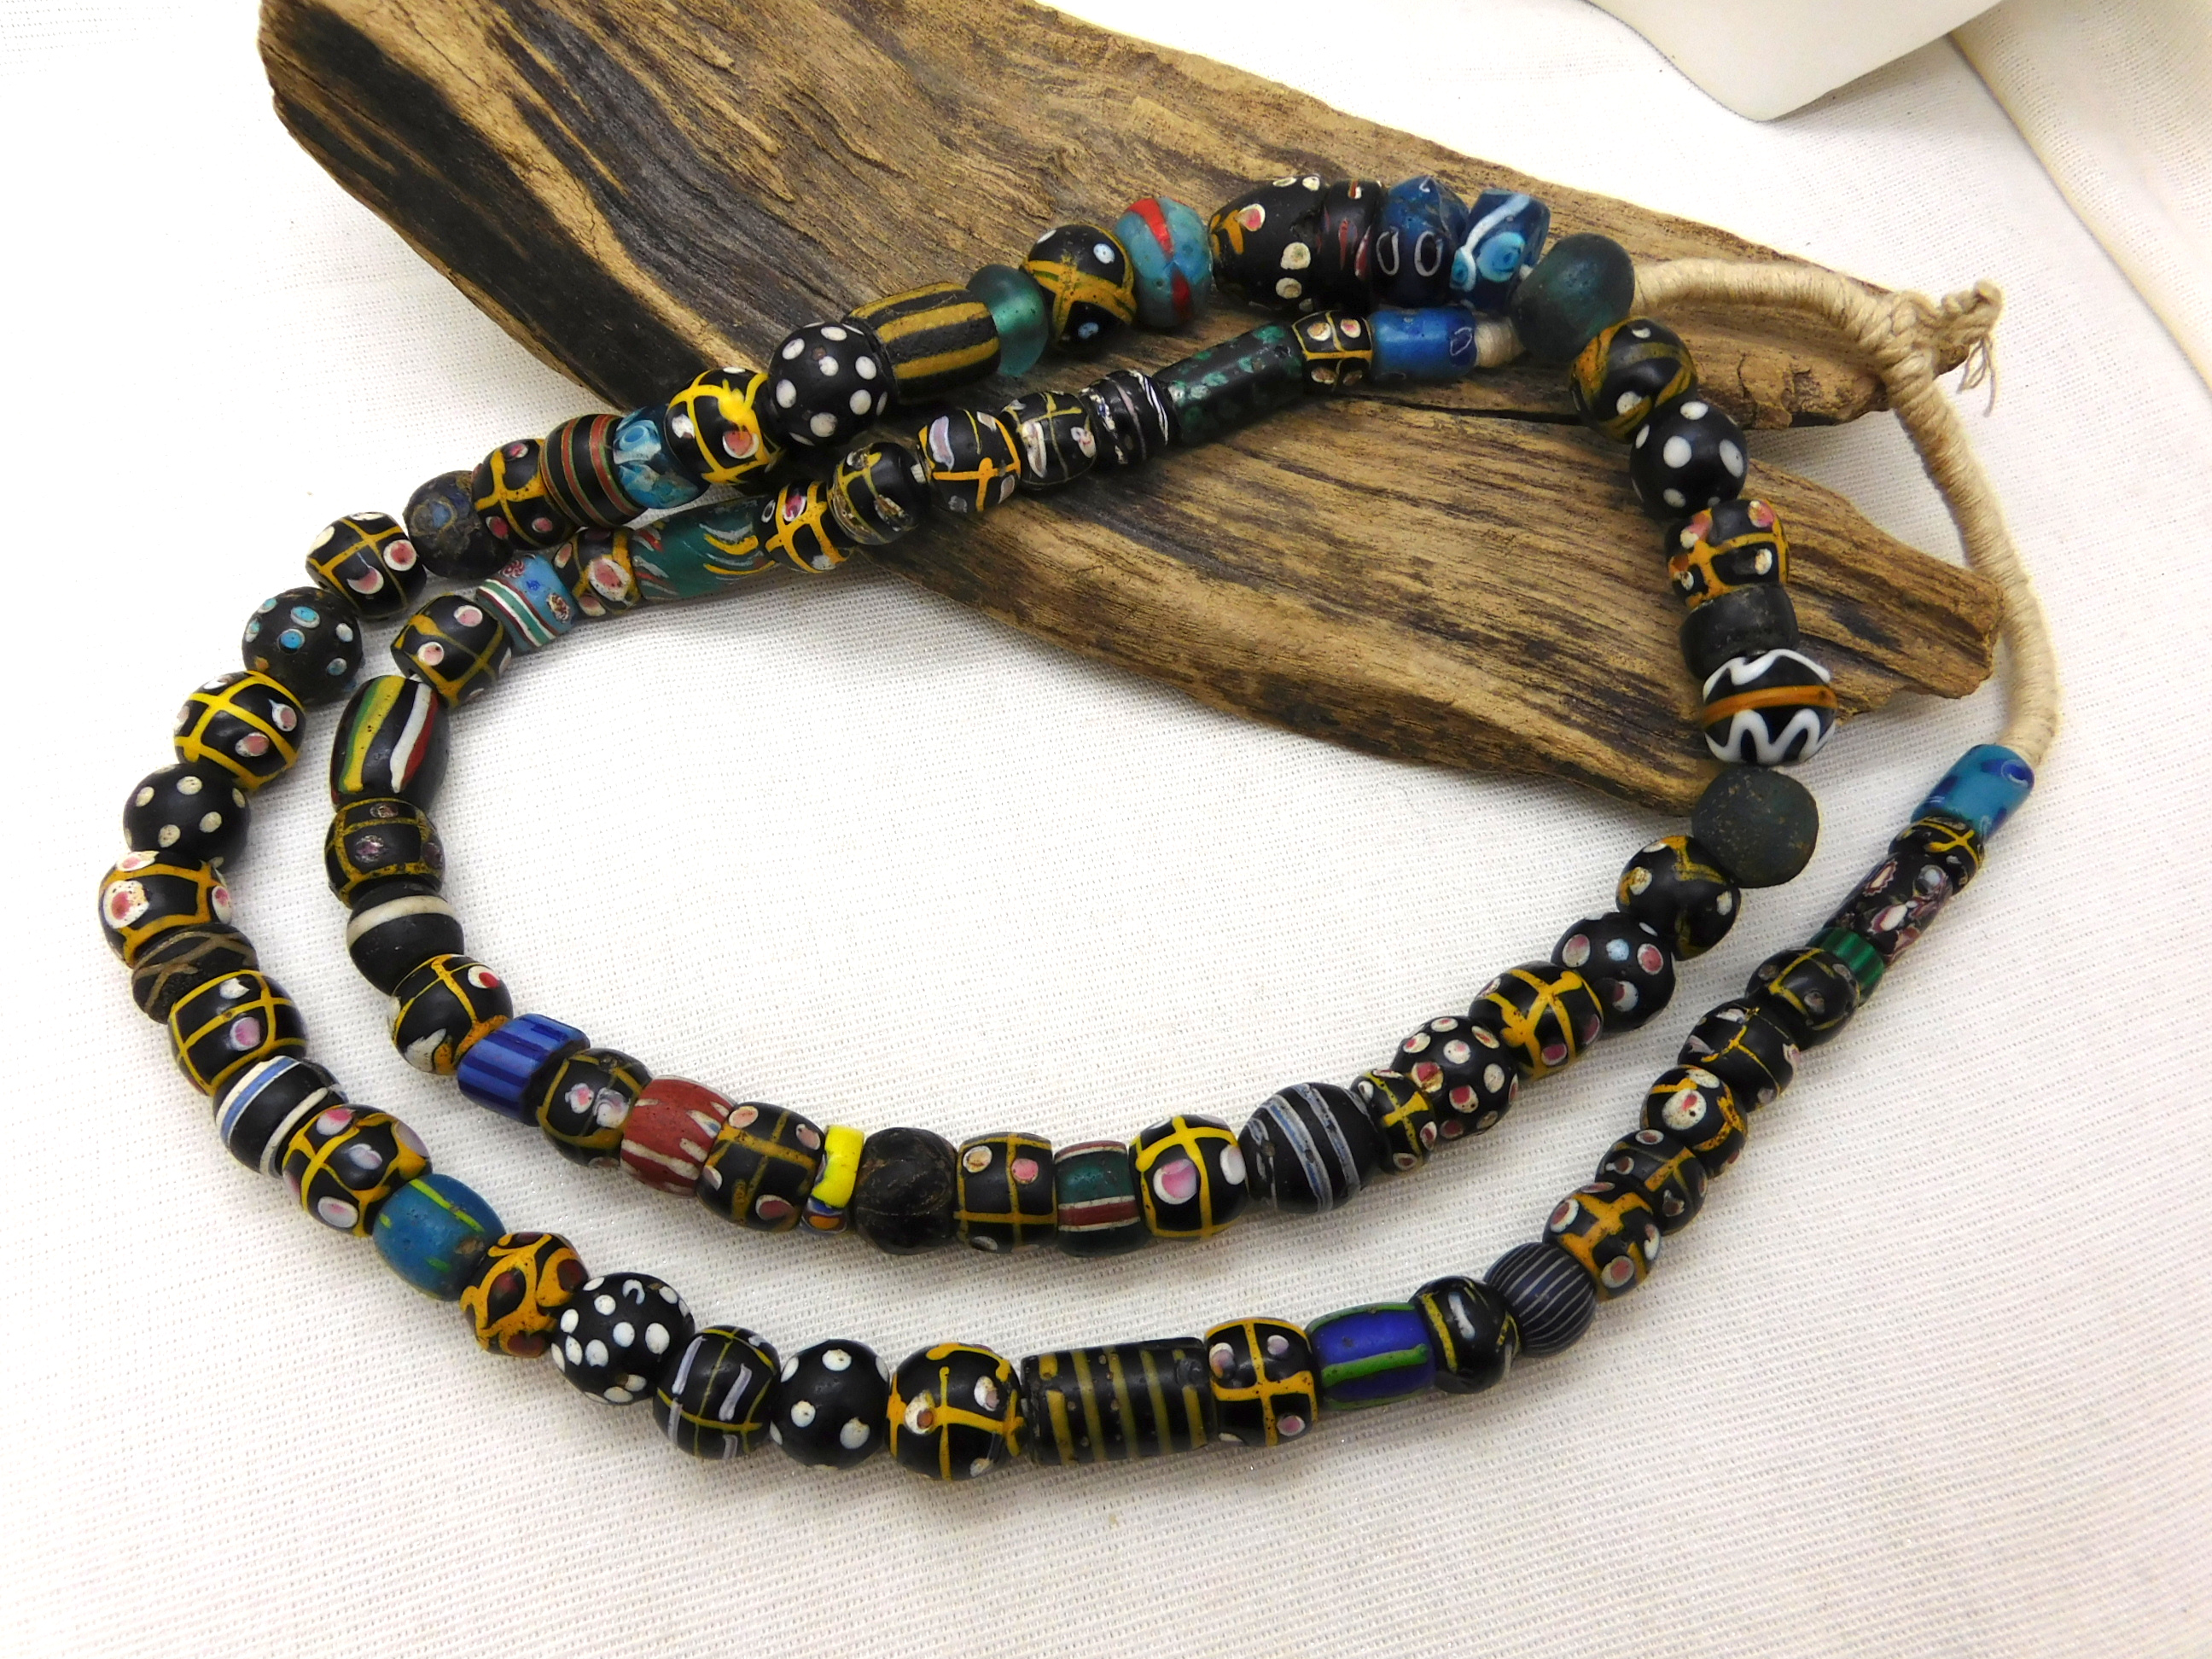 venetian tradebeads from Africa, Skunk beads, eye beads full strand 81 beads